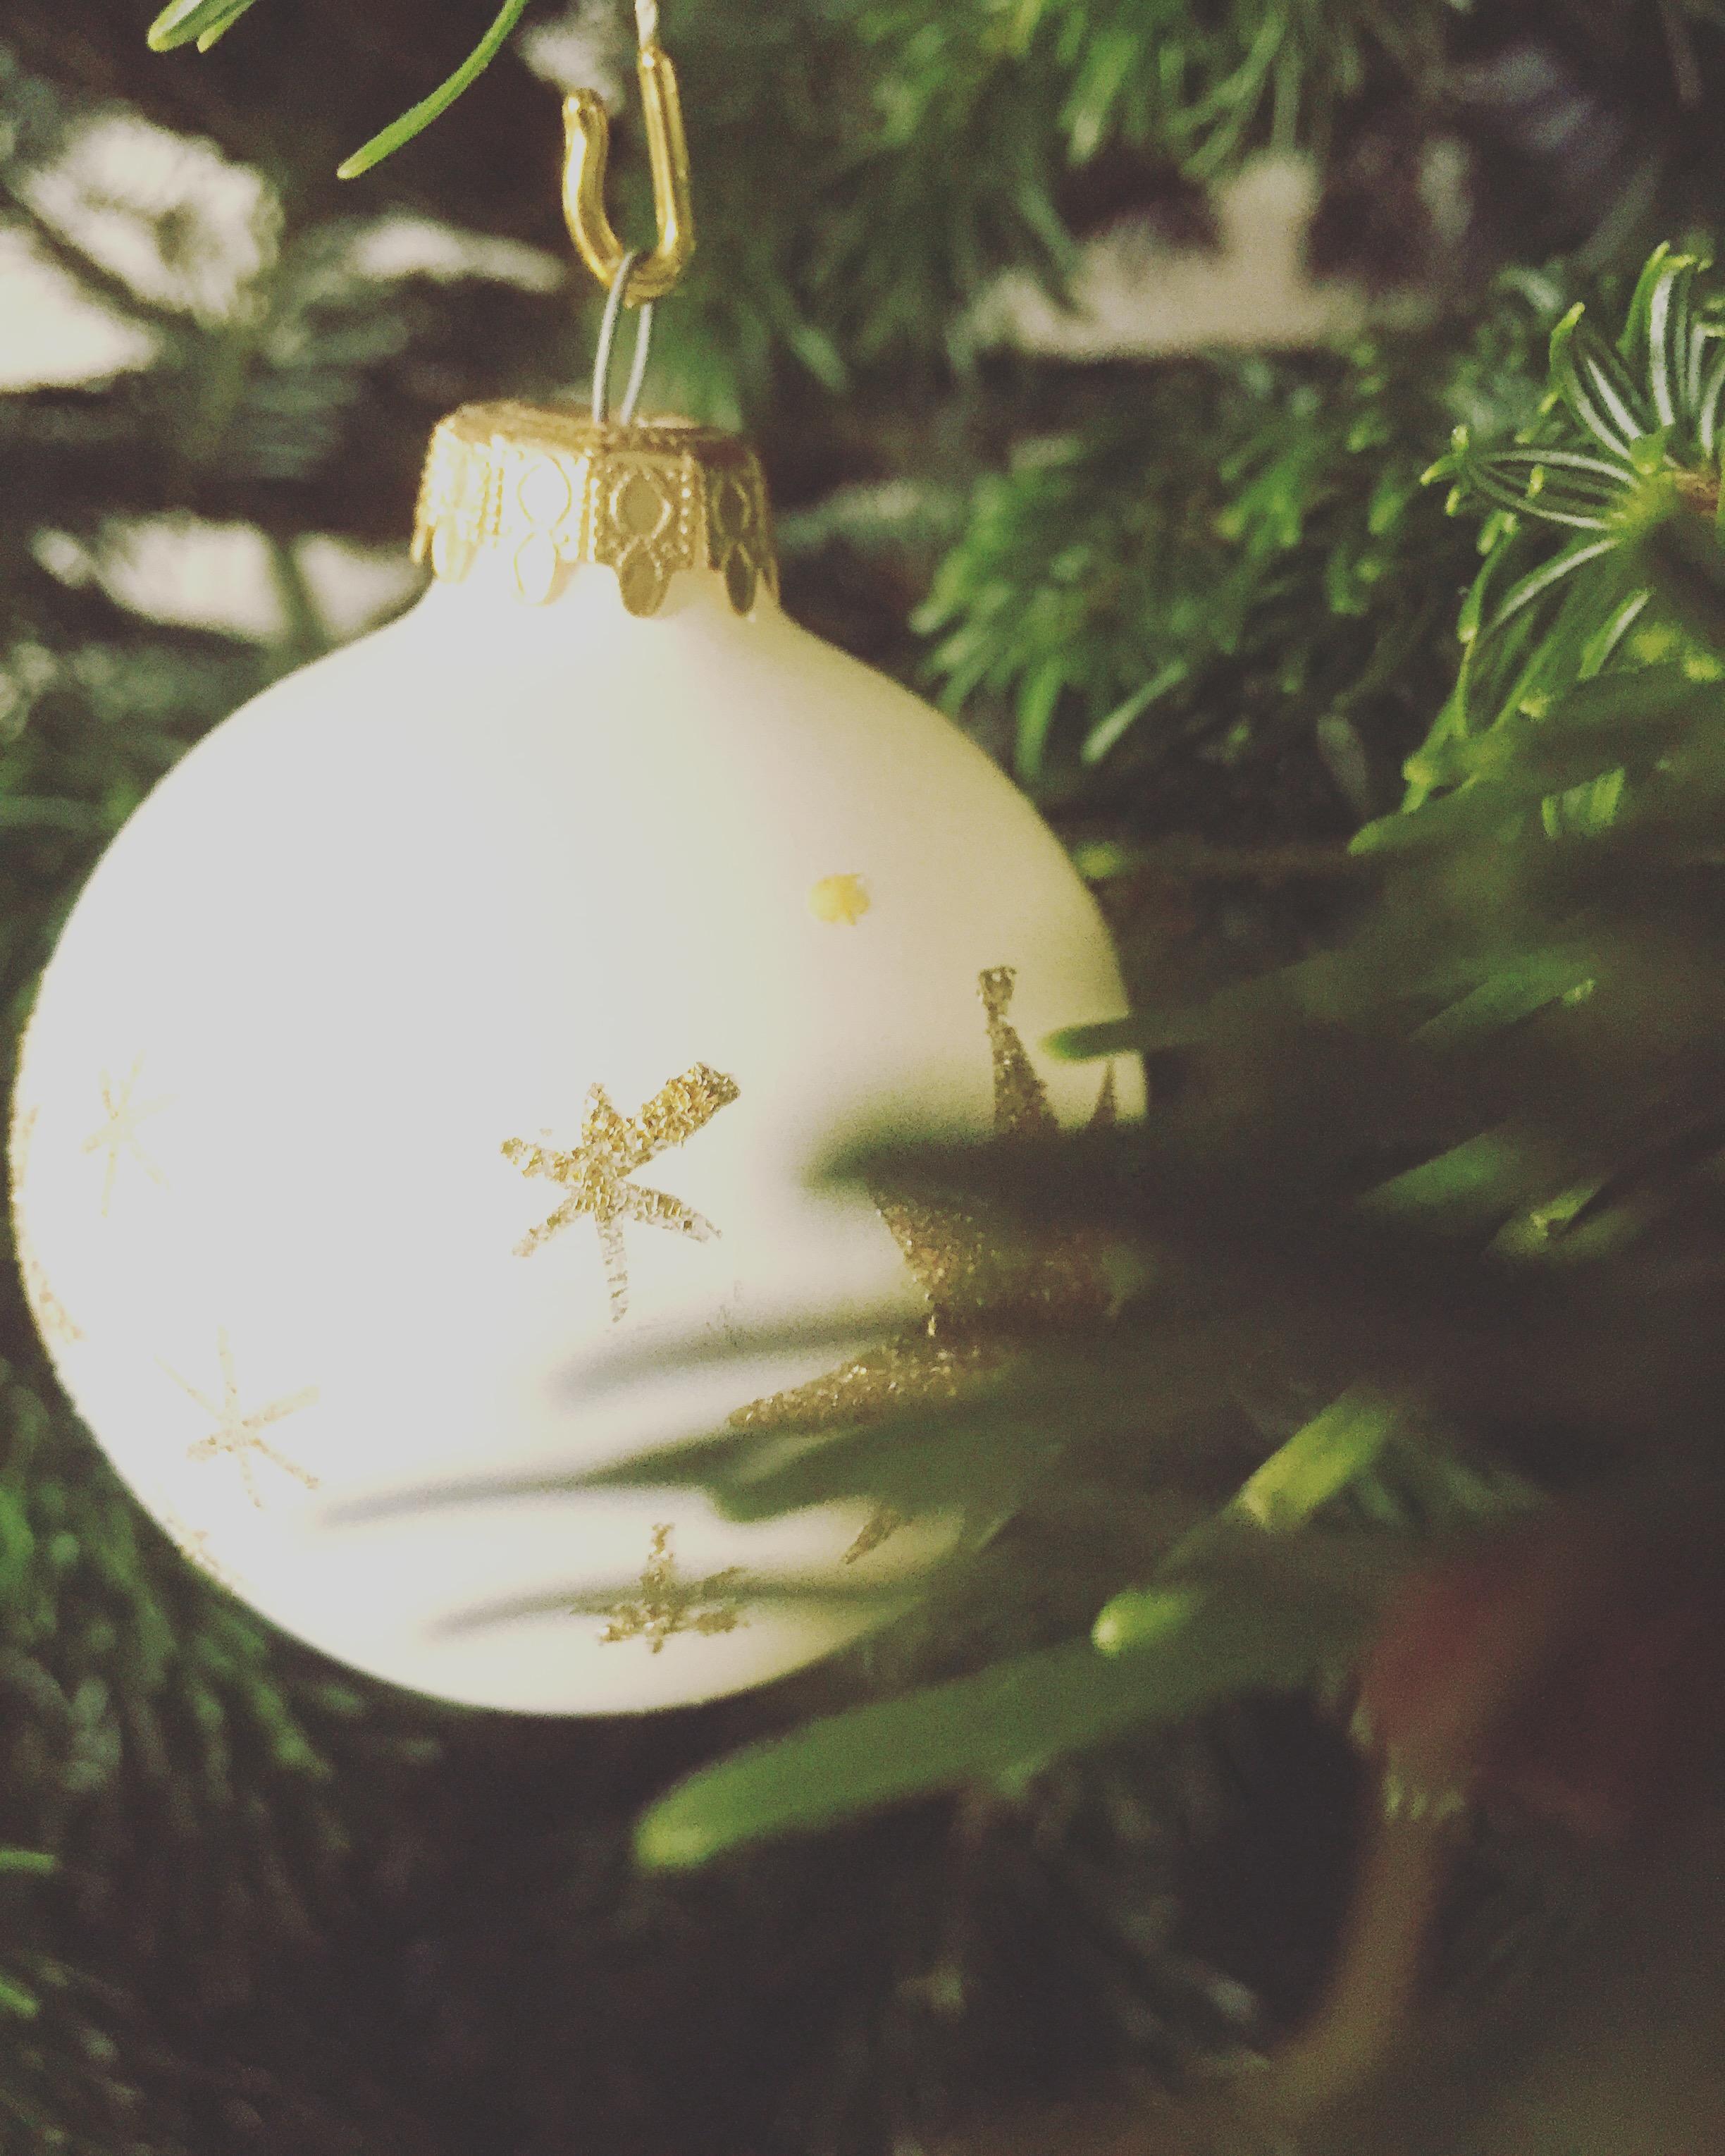 #HOMESTAGINGMÜNCH wünscht noch einen #schönen 2.#weihnachtstag 😊🎄🕯🎁✨🎄
#weihnachten #tannenbaum #weihnachtskugeln